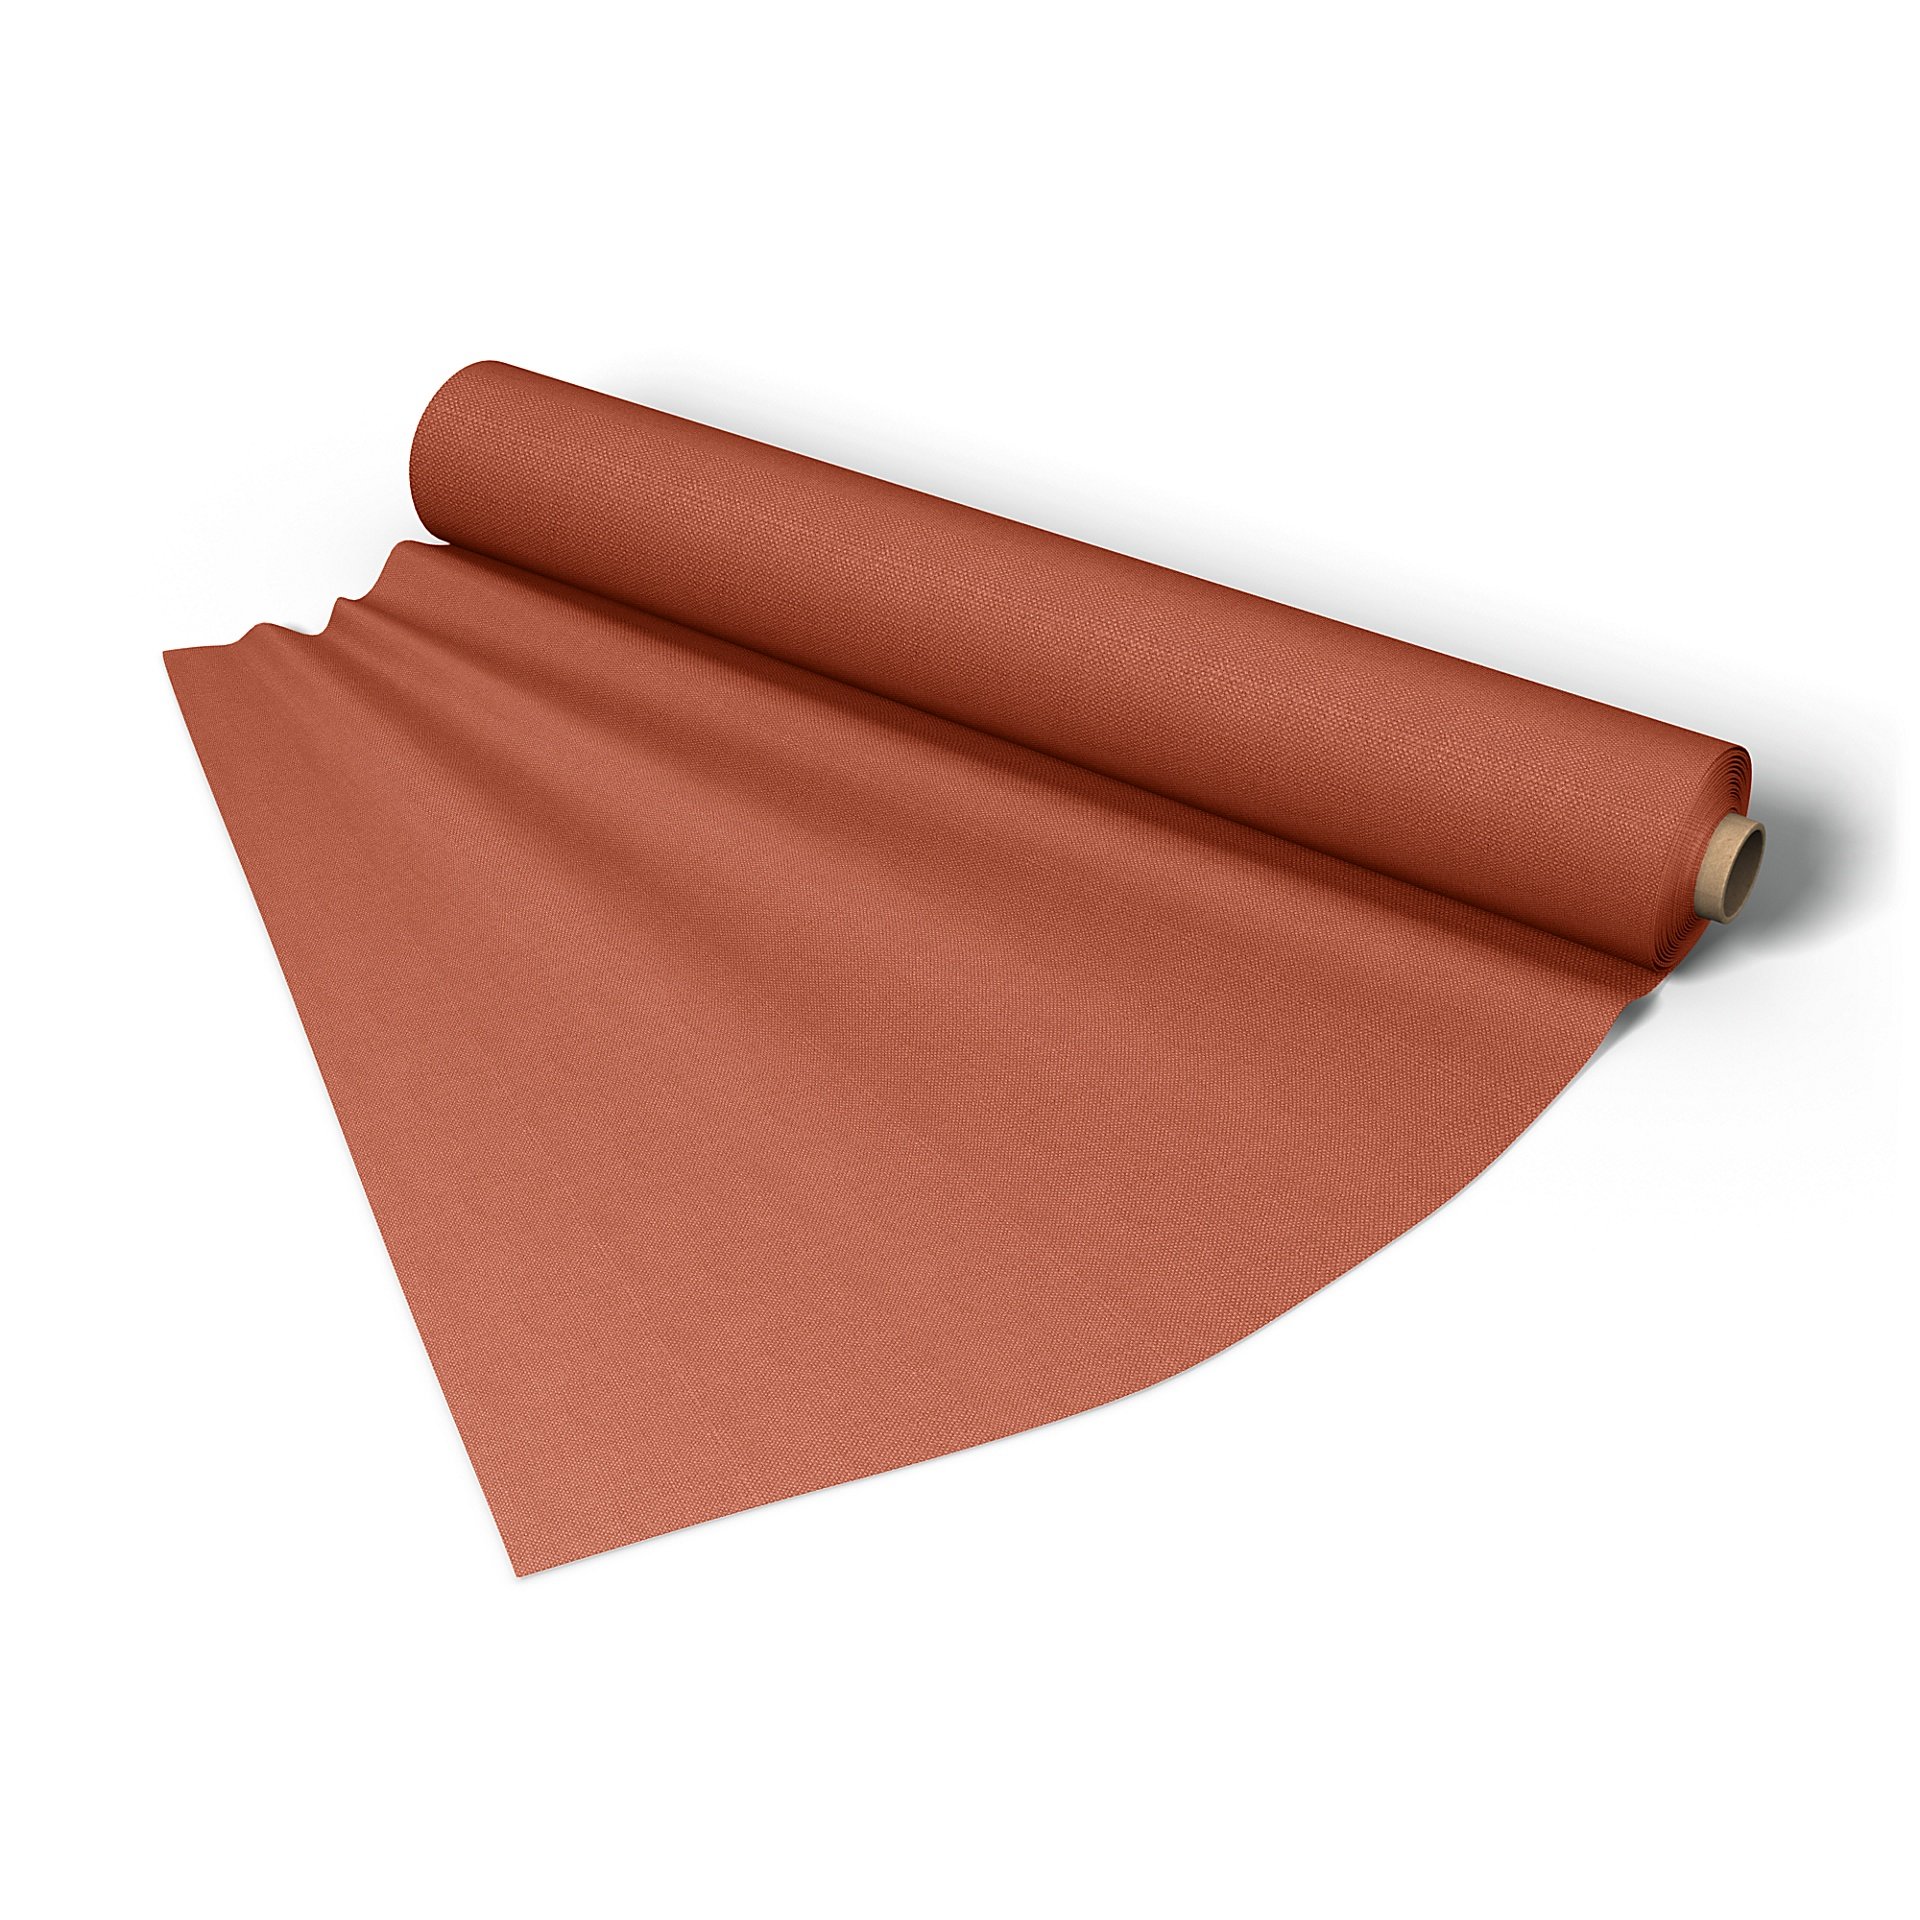 Fabric per metre, Burnt Orange, Linen - Bemz